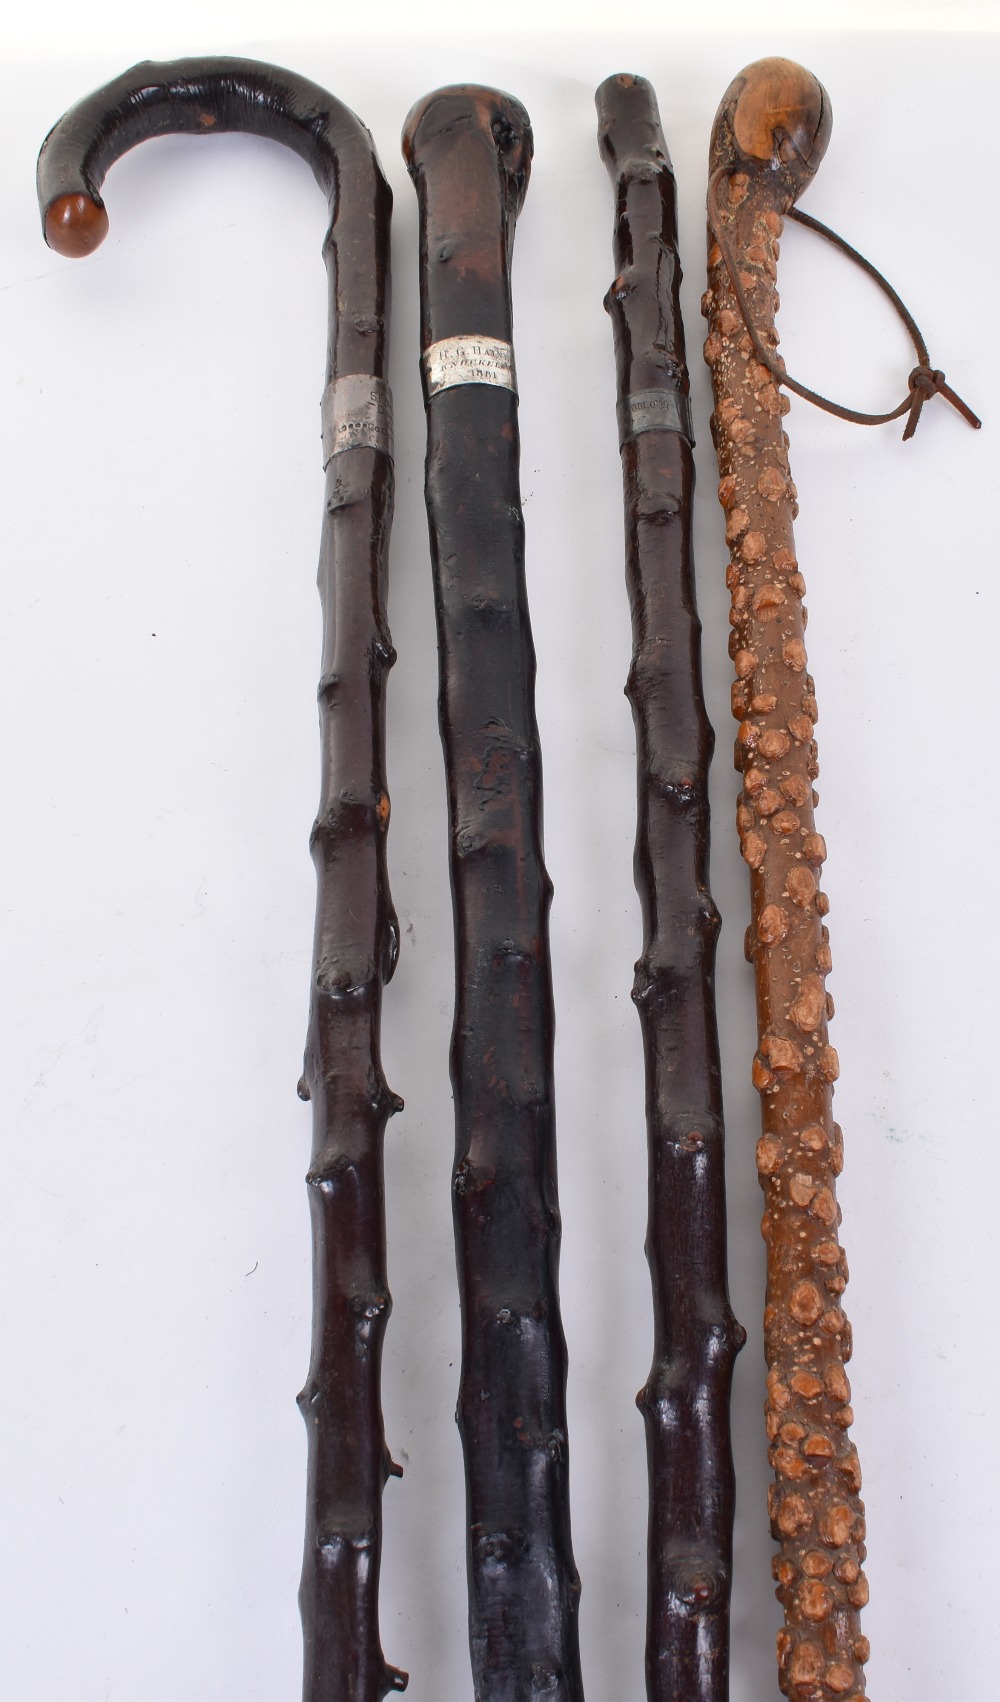 4x assorted knobbly walking sticks